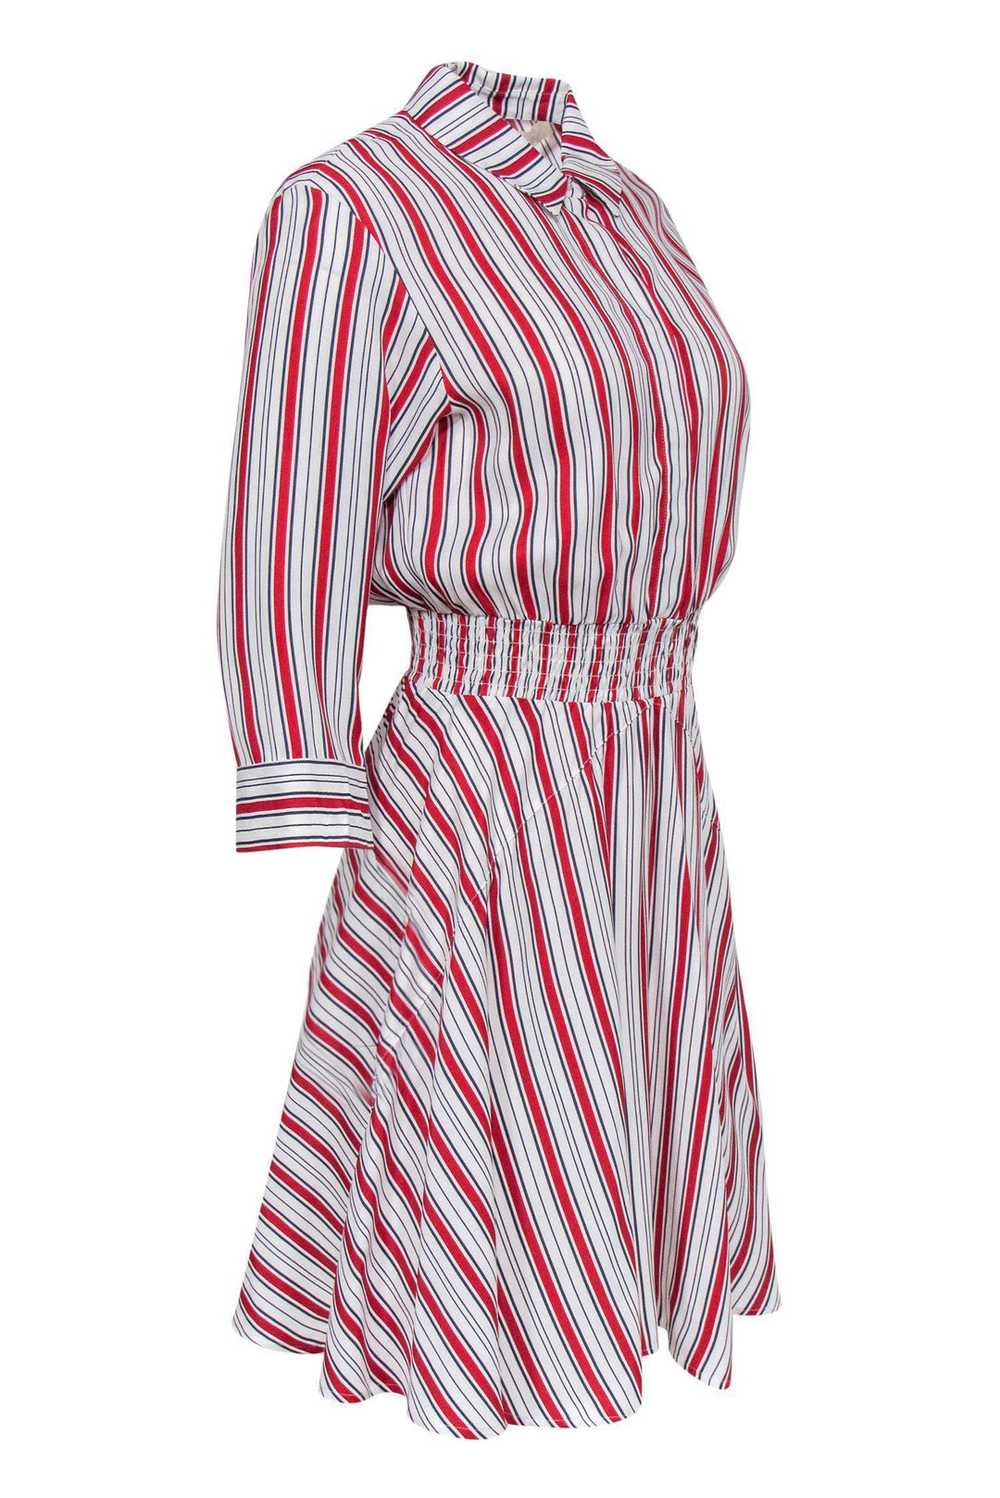 Maje - White & Red Striped Shirt Dress Sz L - image 2